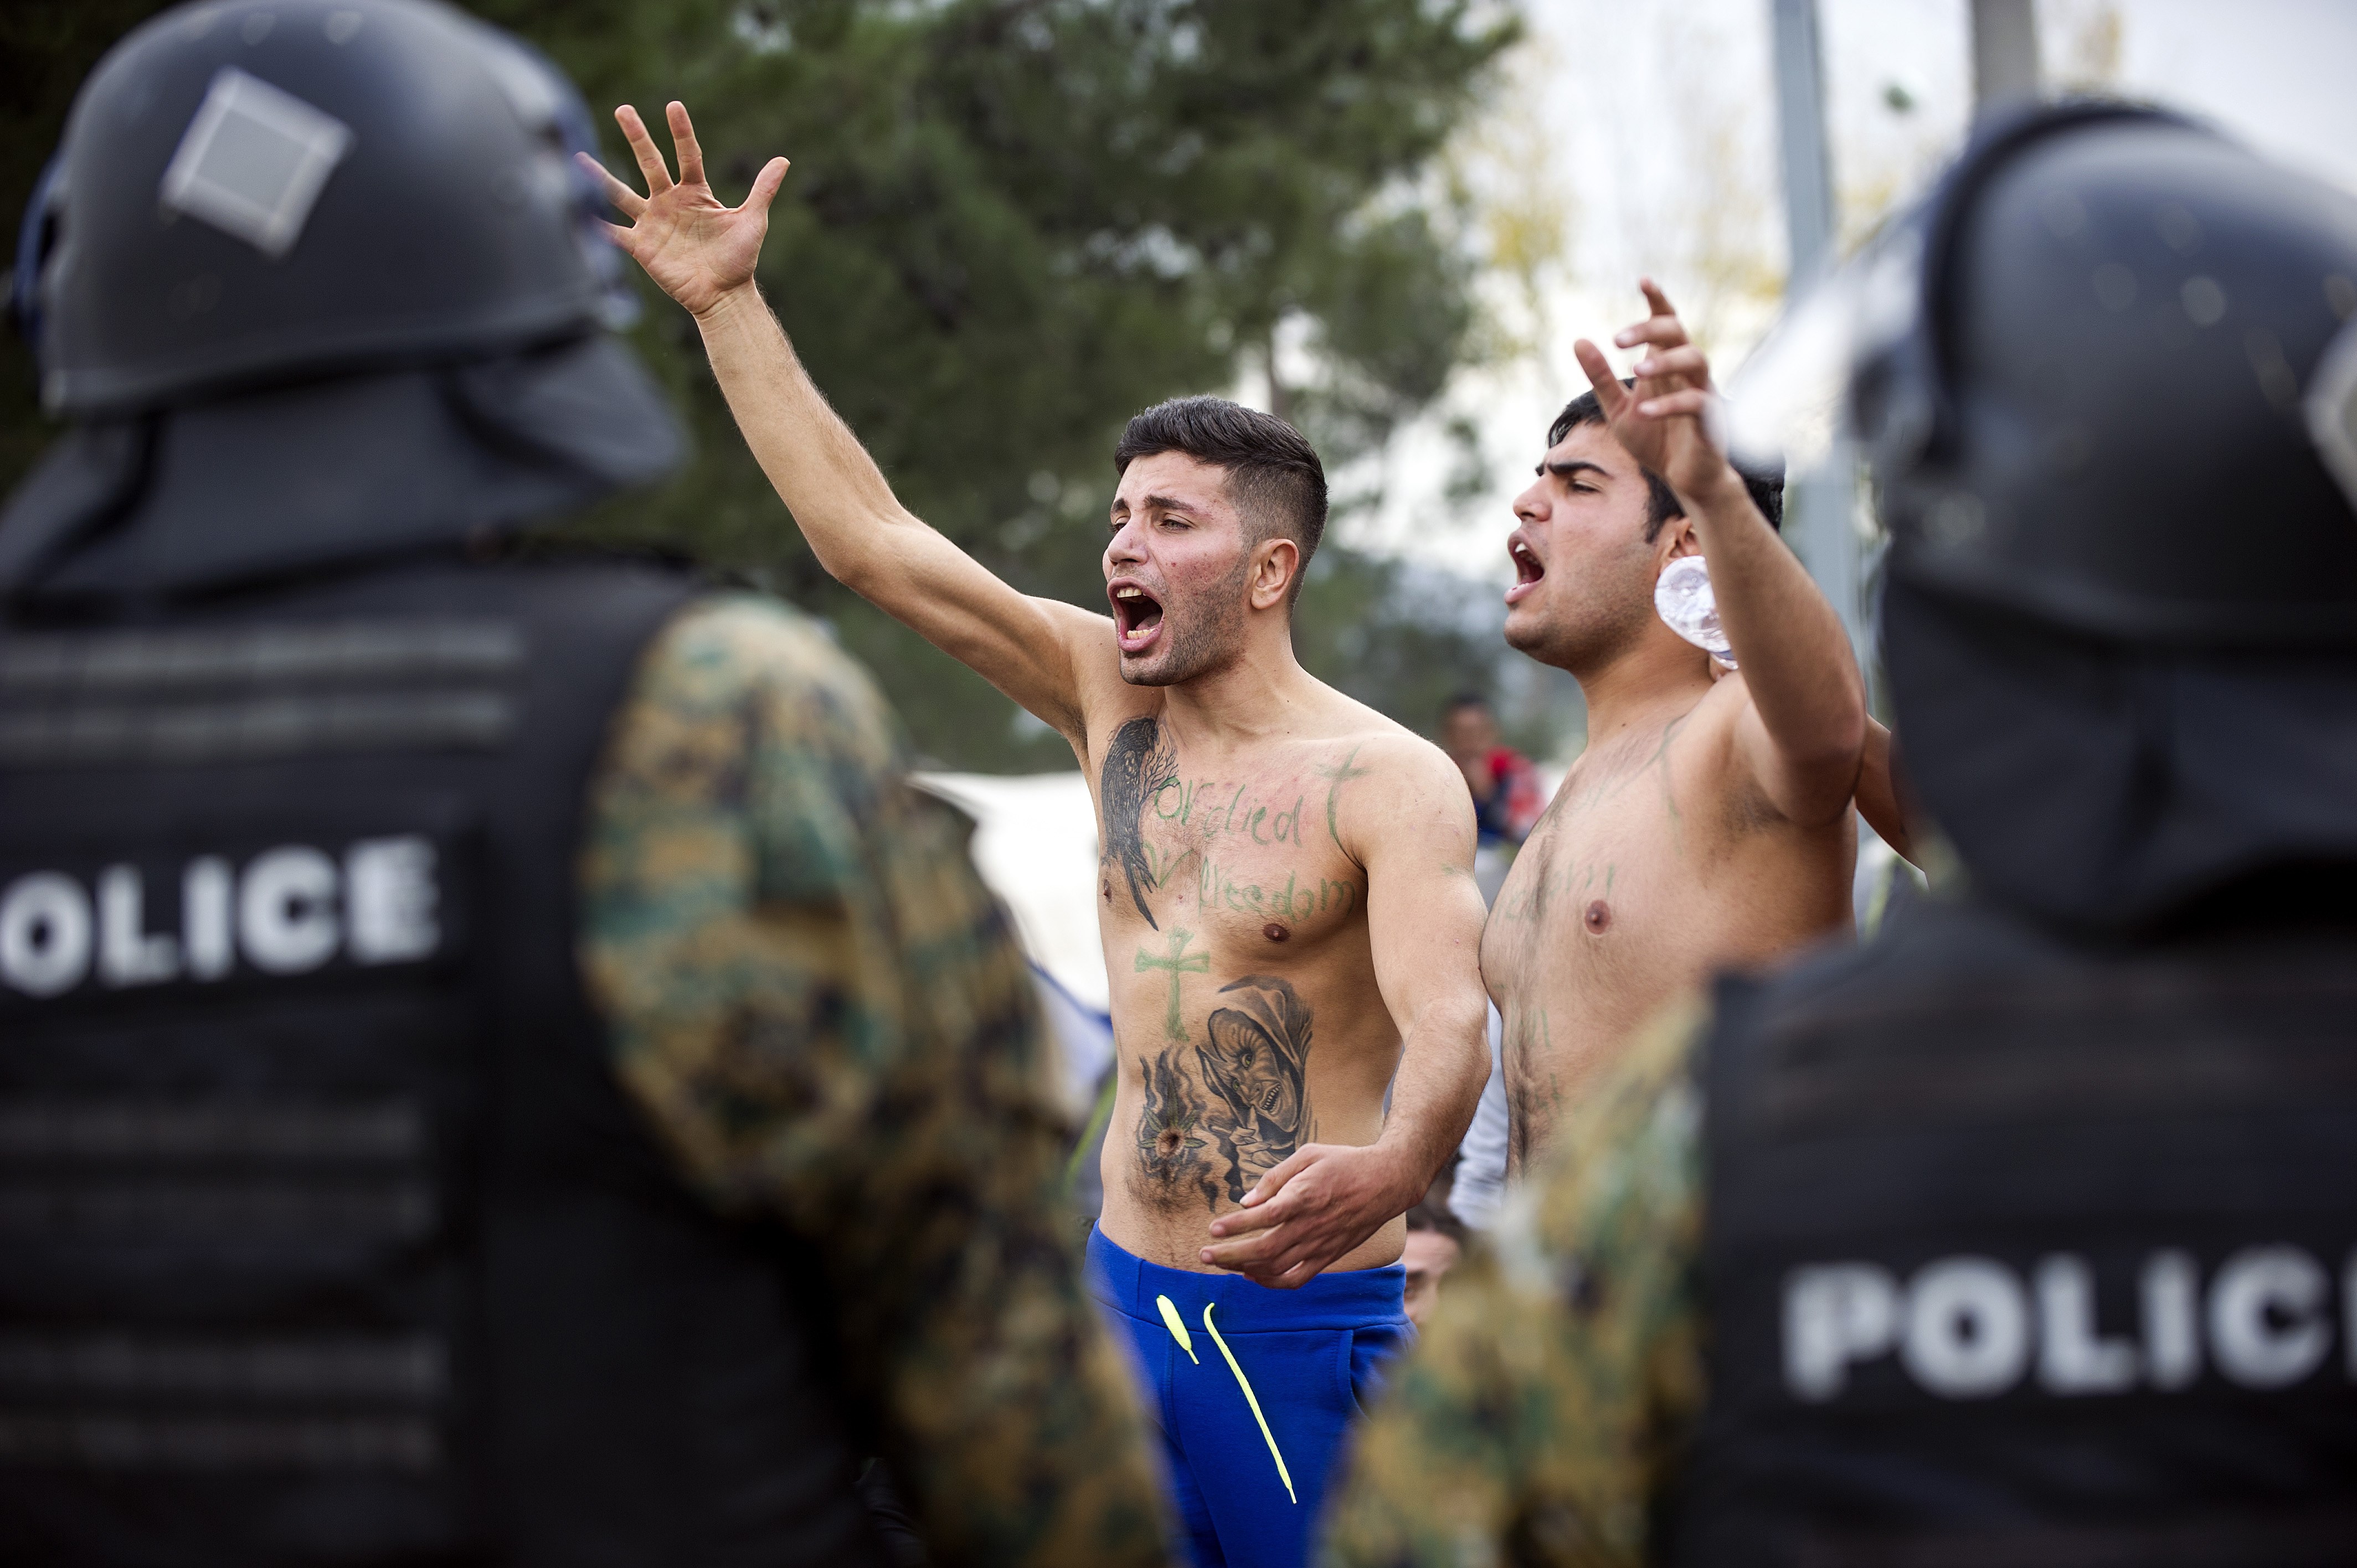 Mazedonien warnt vor „hohem Konfliktrisiko“ zwischen Flüchtlingen, Polizei und Bevölkerung